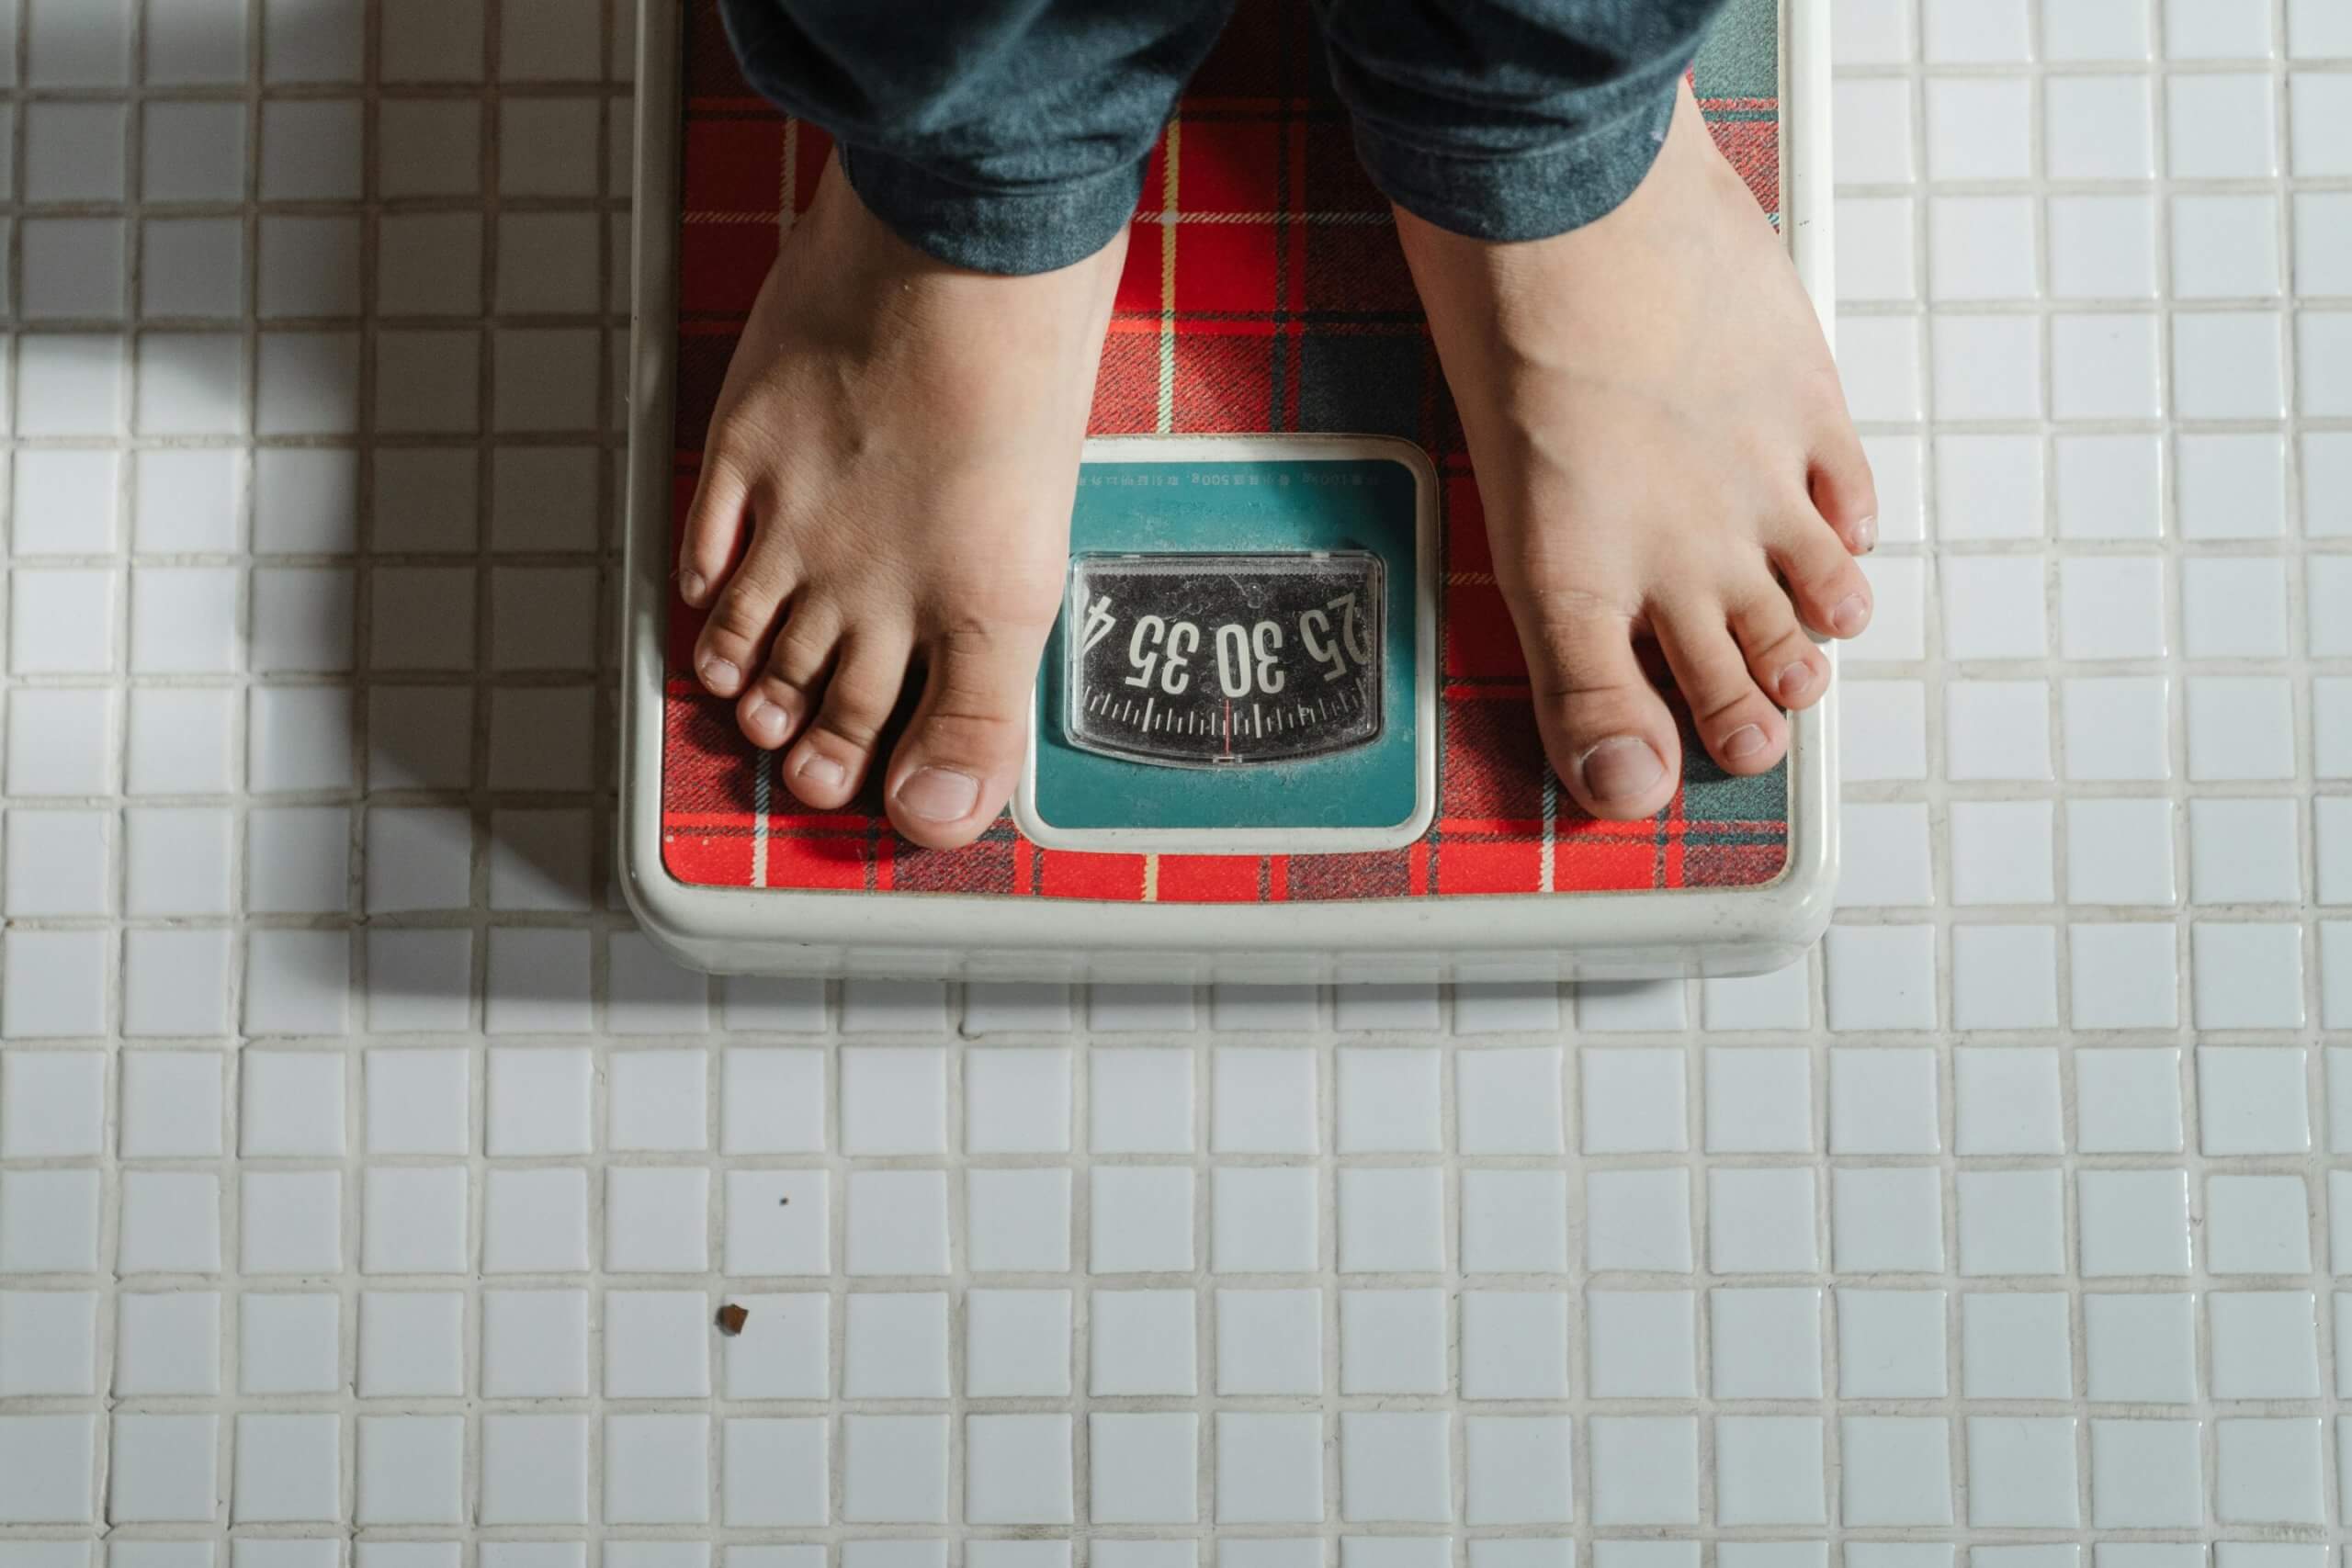 Весы могут лгать: почему не стоит слепо верить цифрам!